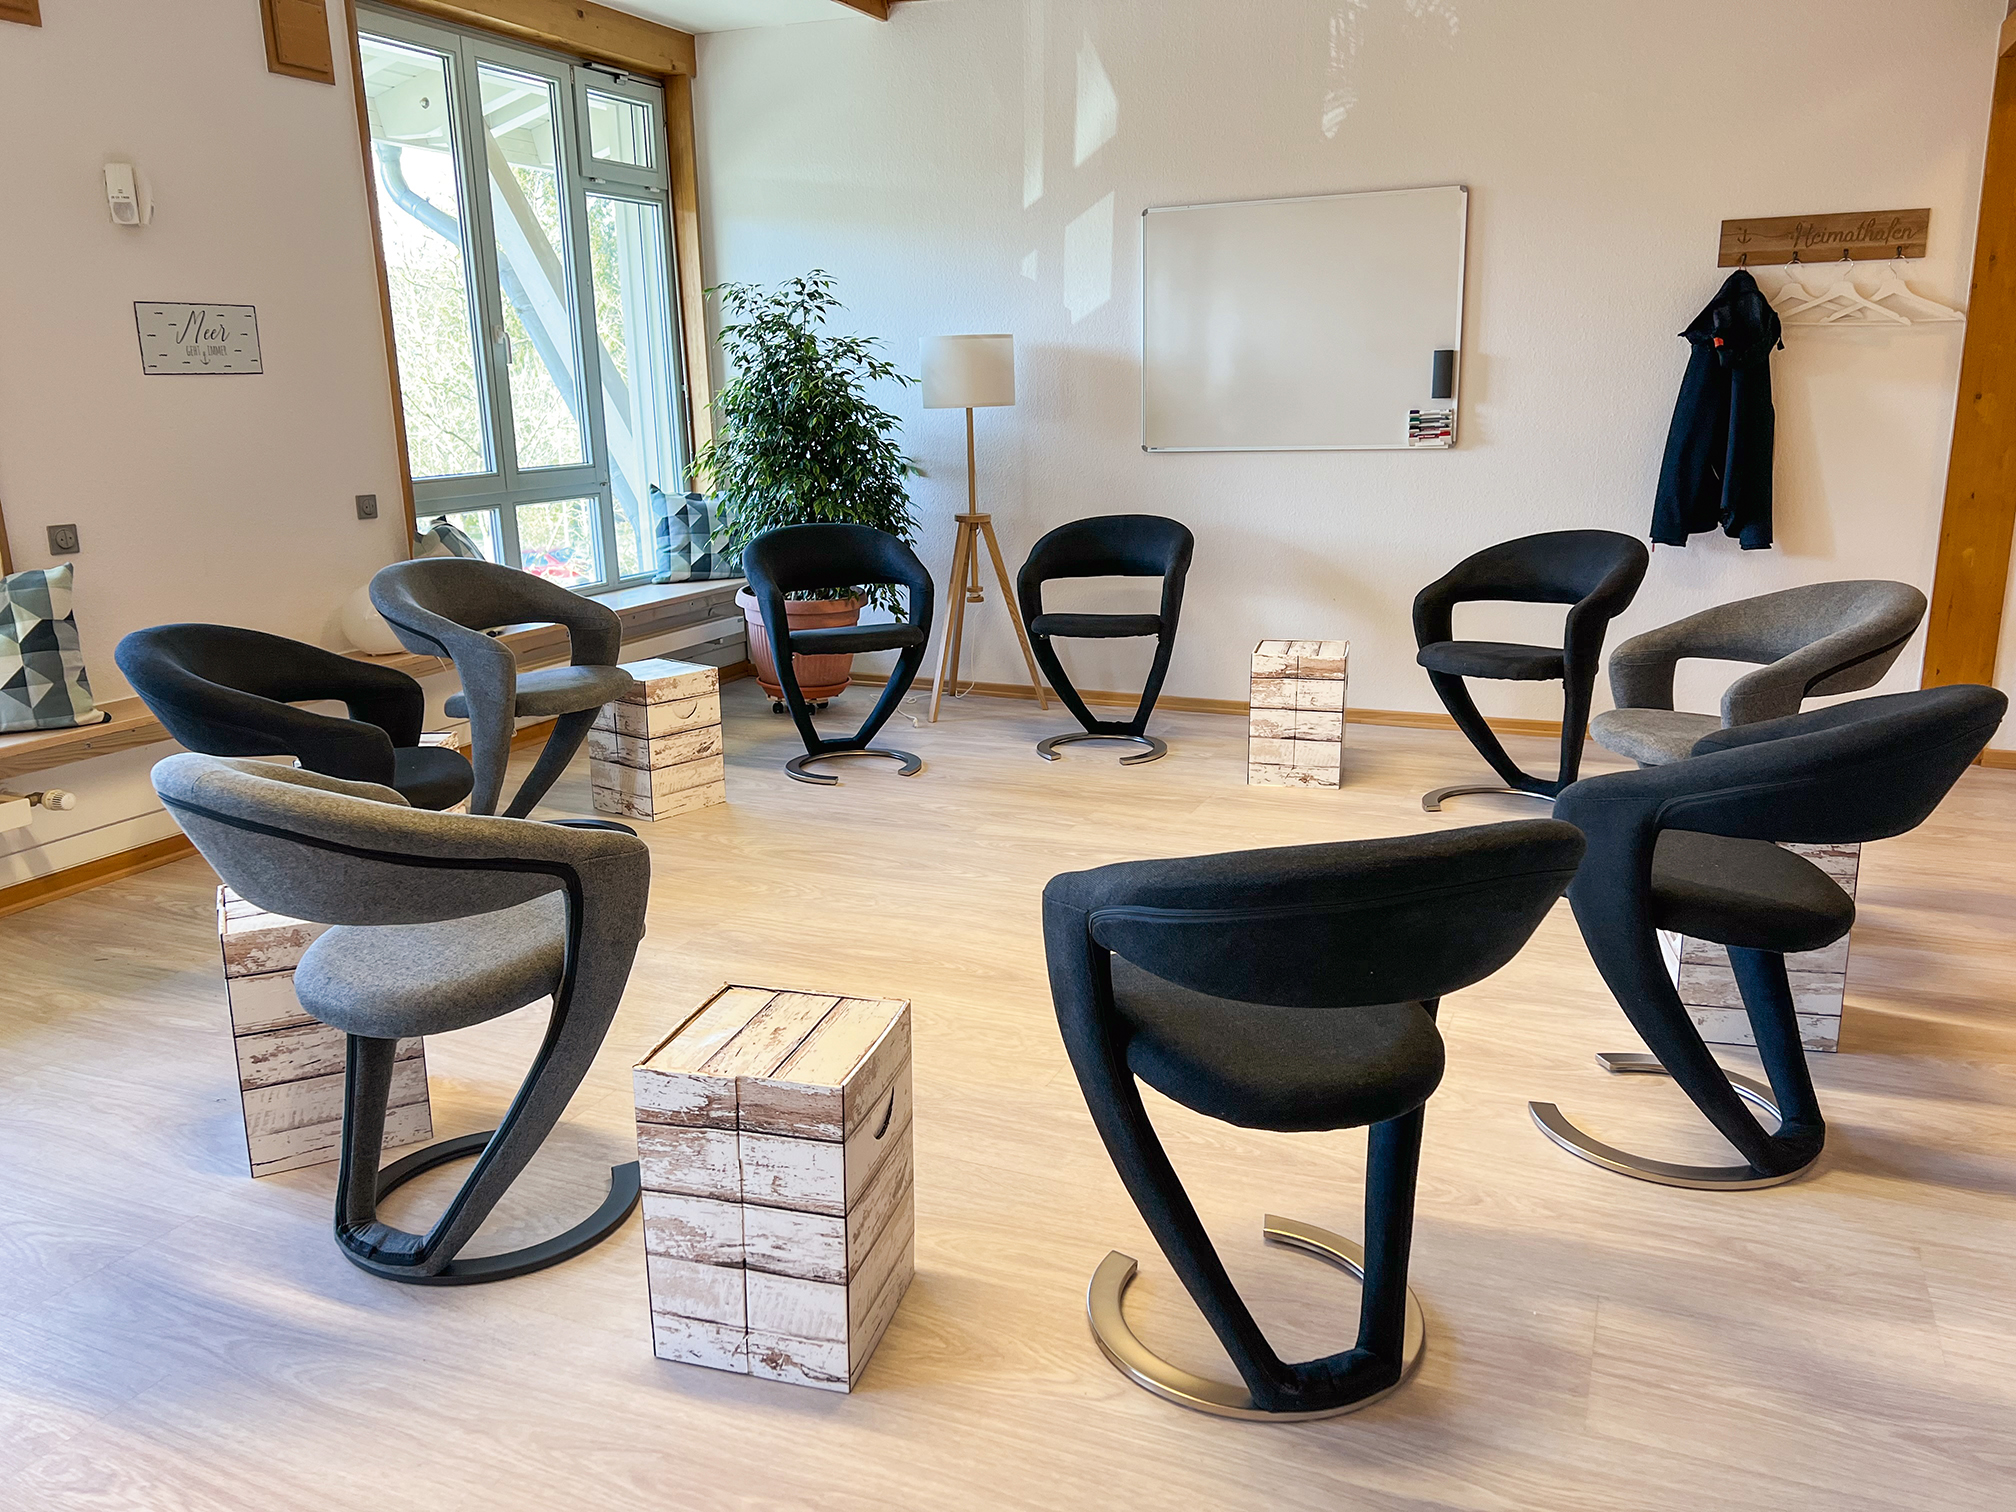 Das Bild zeigt den Seminarraum von Mediation im Norden von Thomas Lorenzen mit 9 Stühlen, Beistelltischen und einem Whiteboard